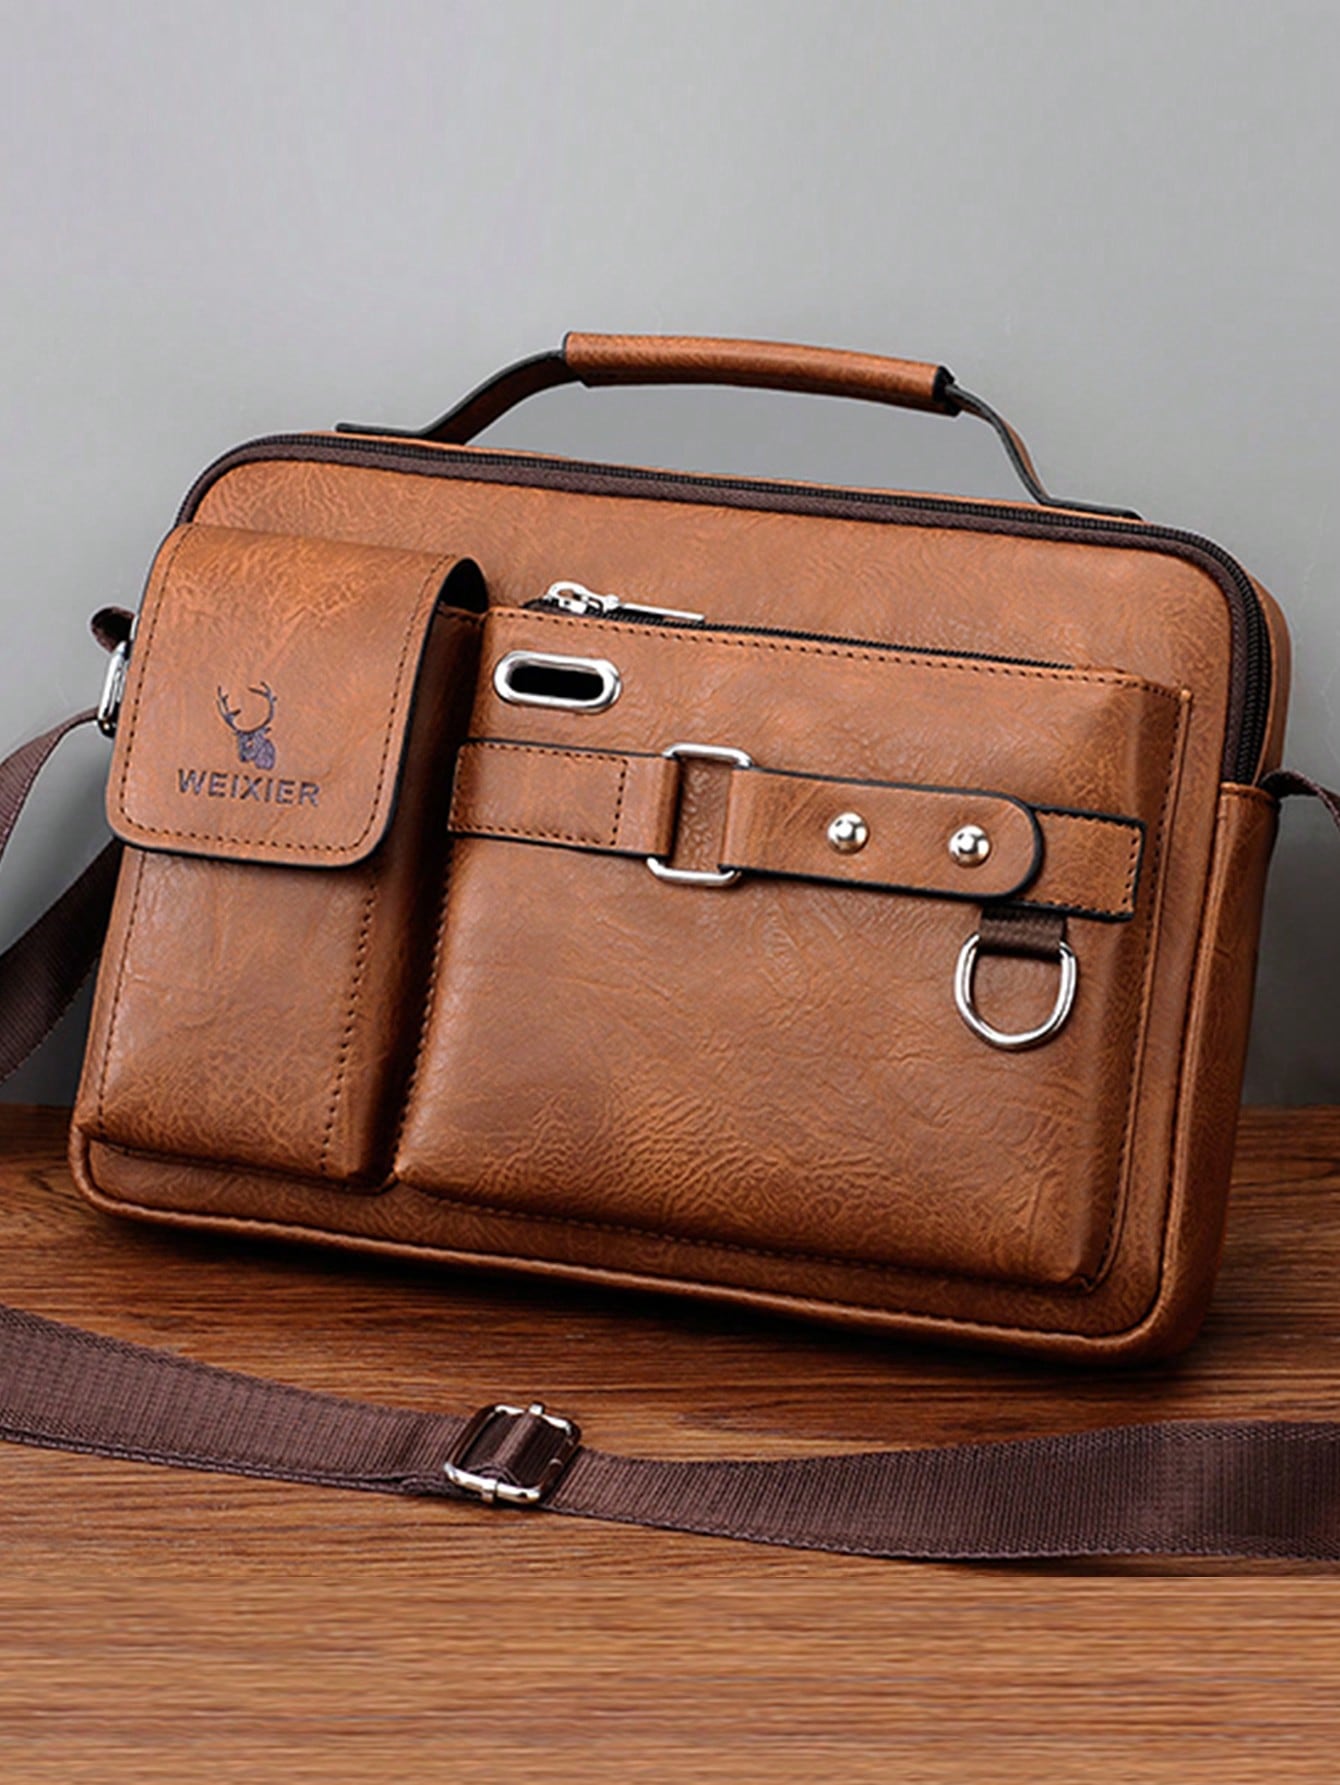 1 шт. сумка на одно плечо/сумка через плечо/деловой портфель/сумка для офиса/рабочего места, коричневый сумка через плечо barez коричневая